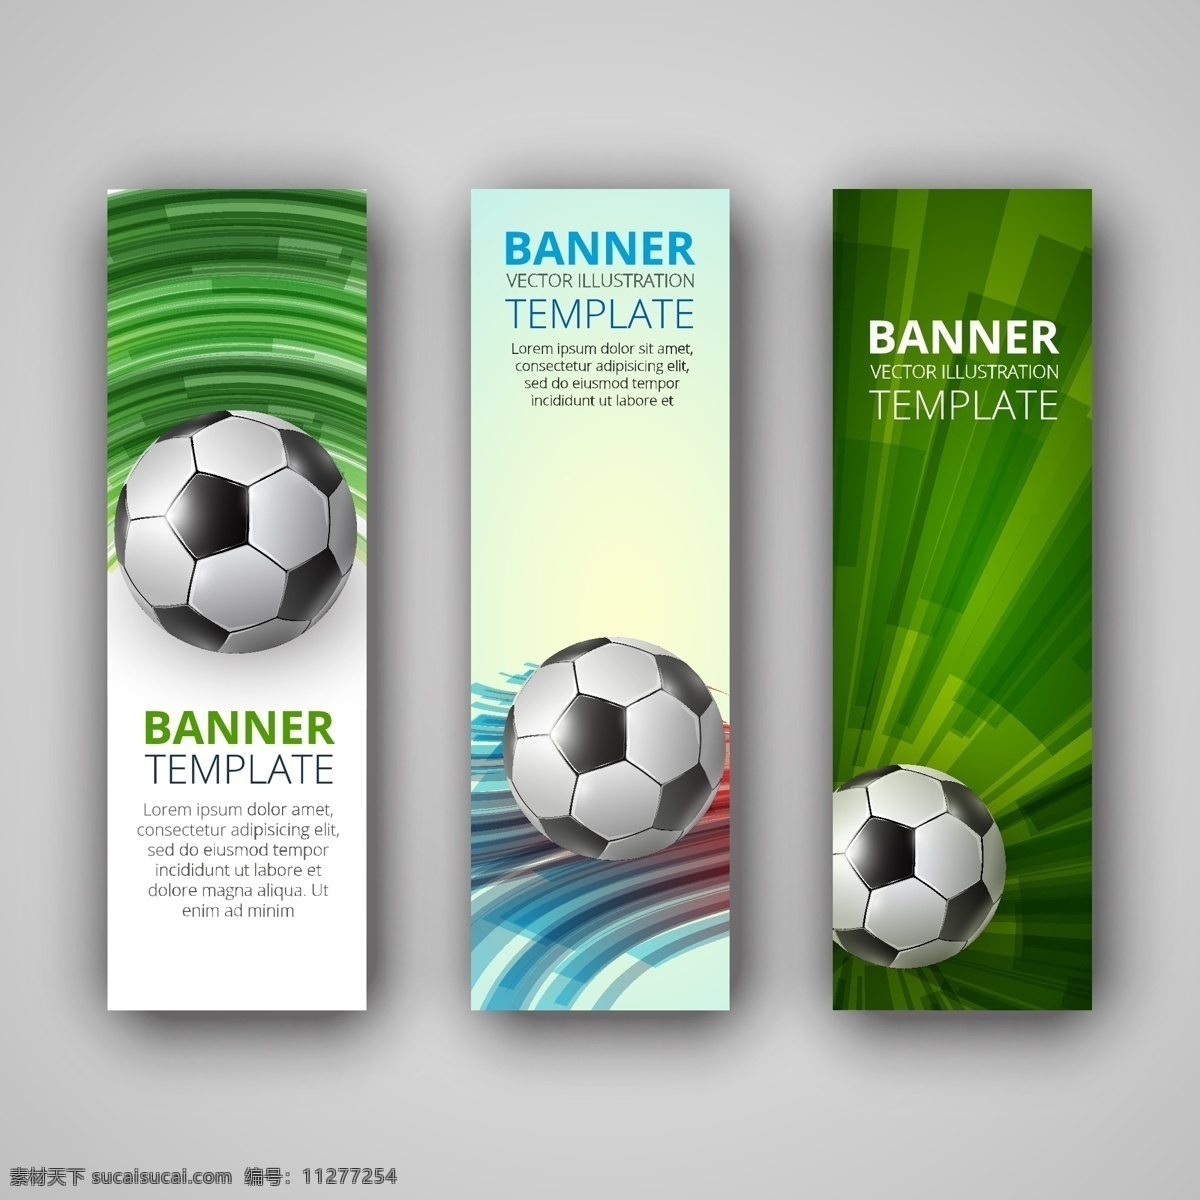 绿色 足球 竖 幅 背景 模板下载 竖幅 世界杯 巴西 体育运动 生活百科 矢量素材 灰色